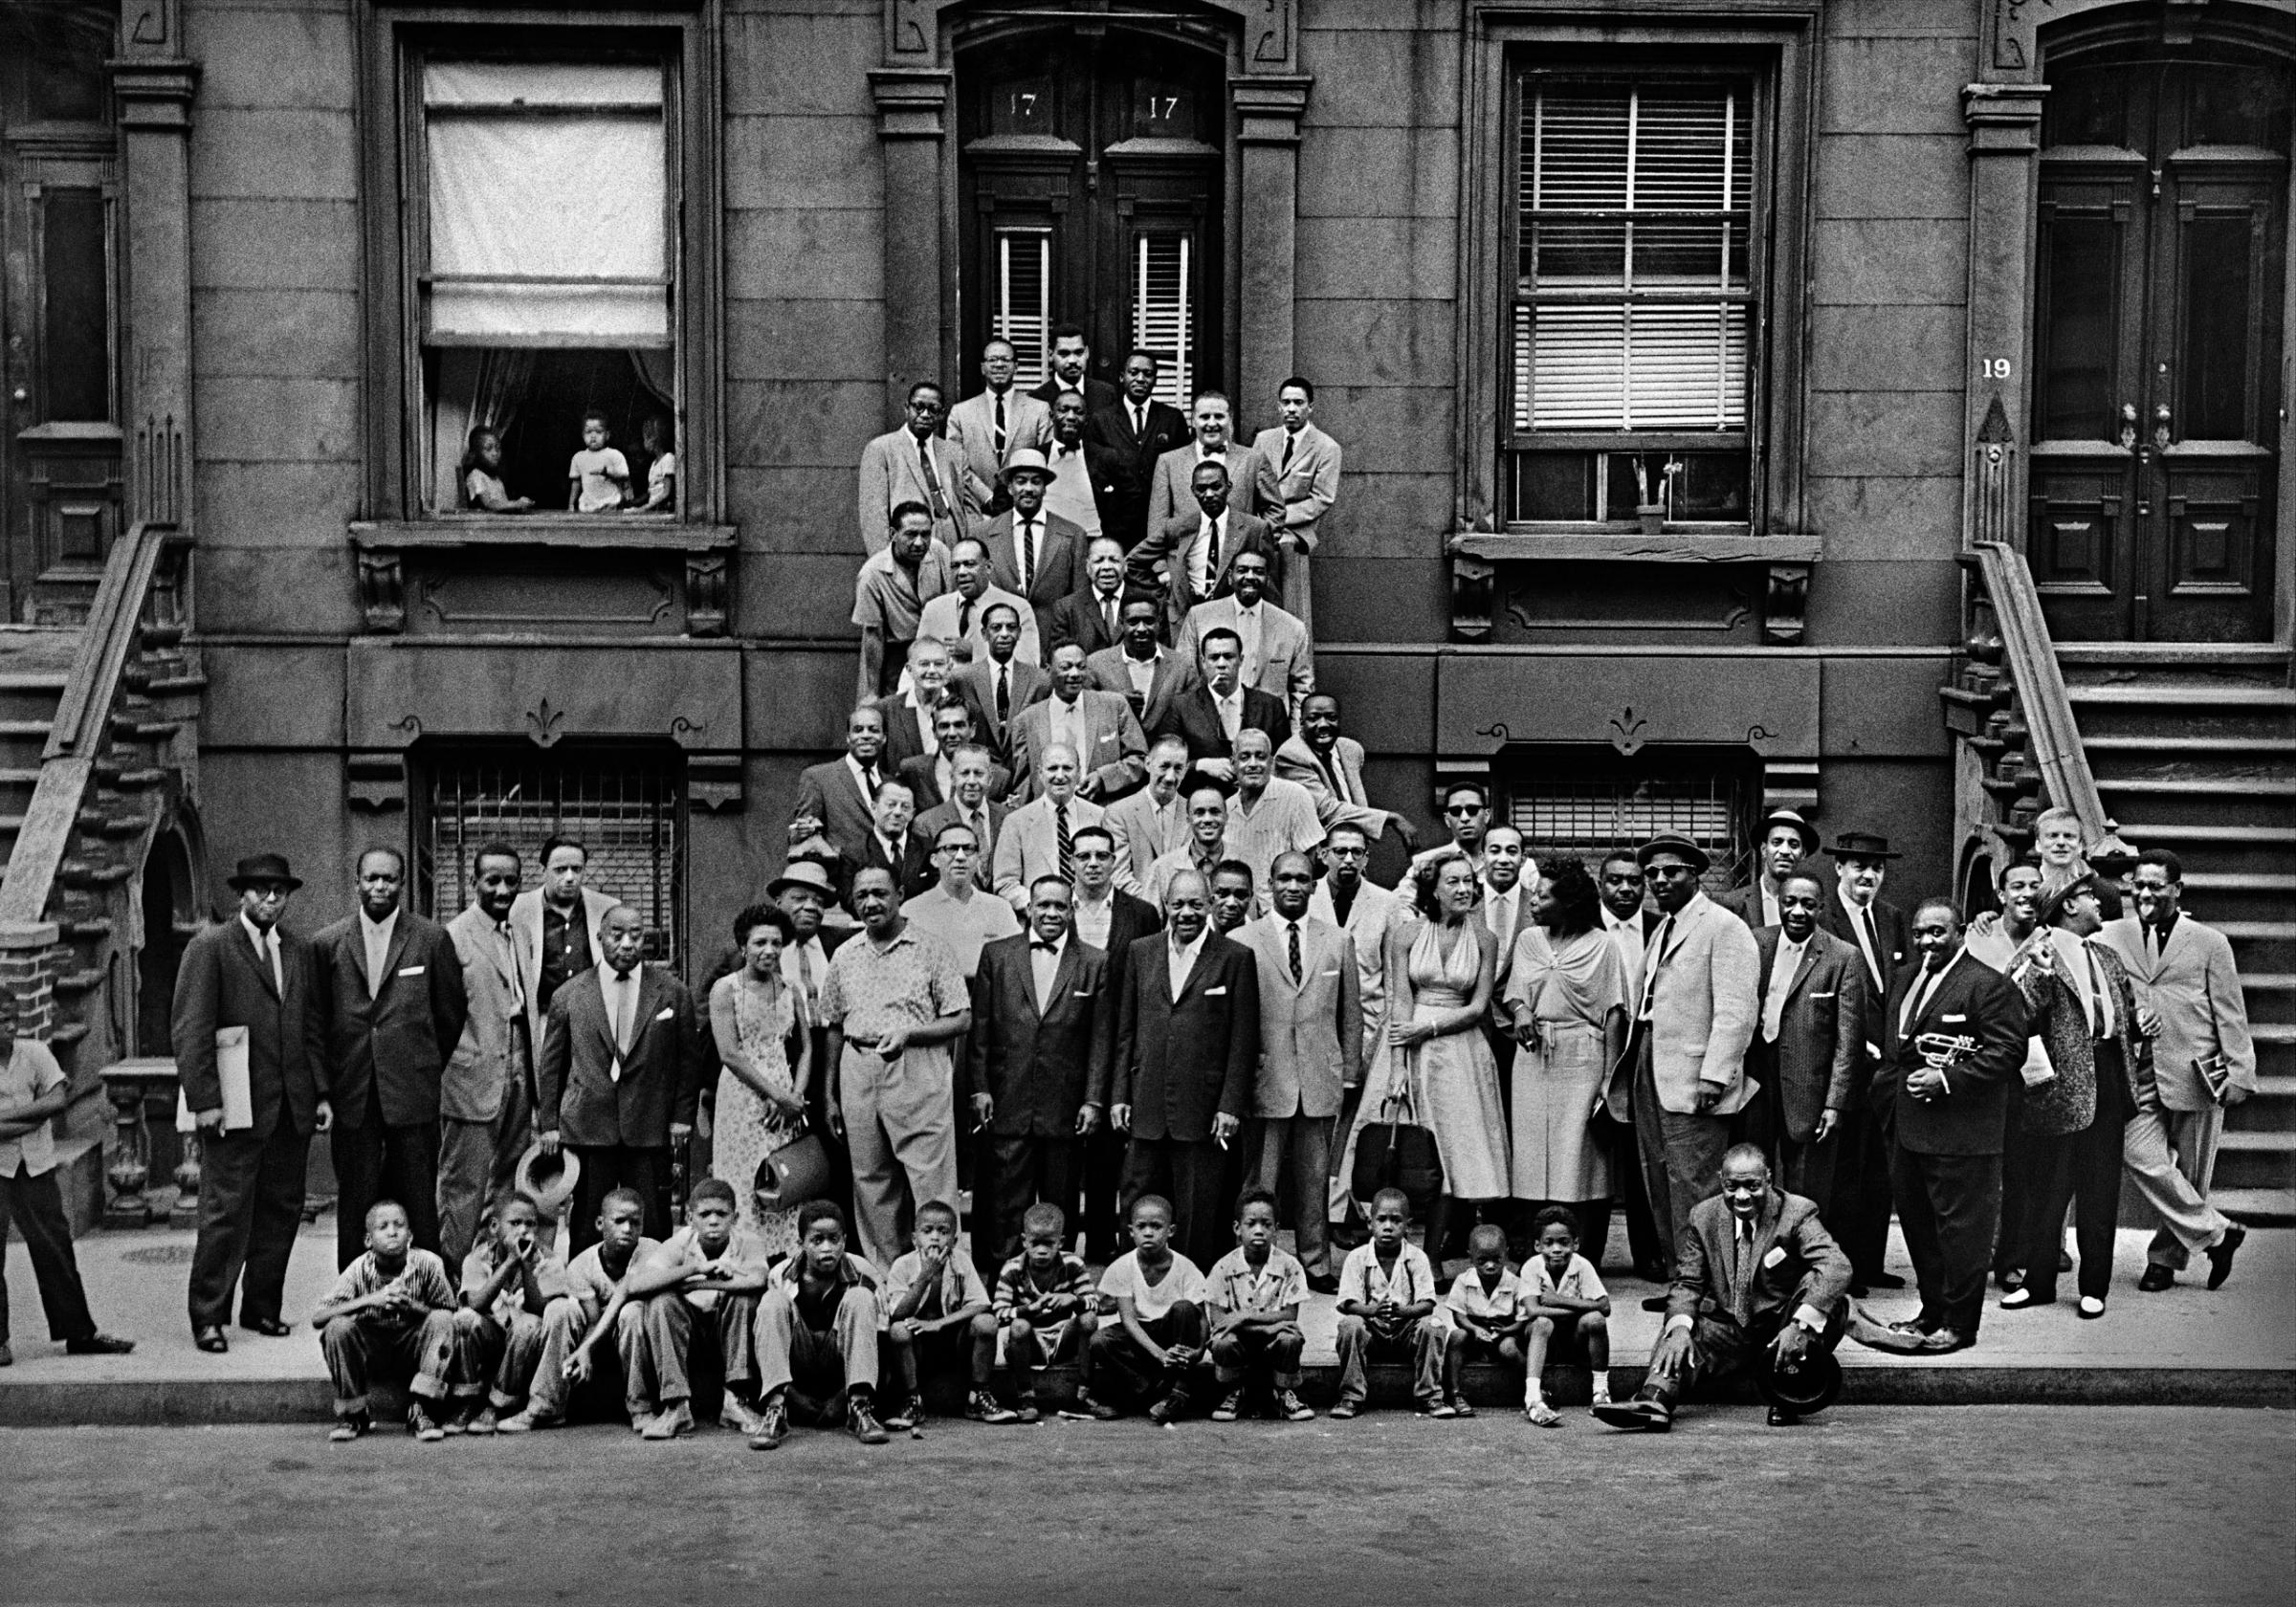 Harlem, 1958